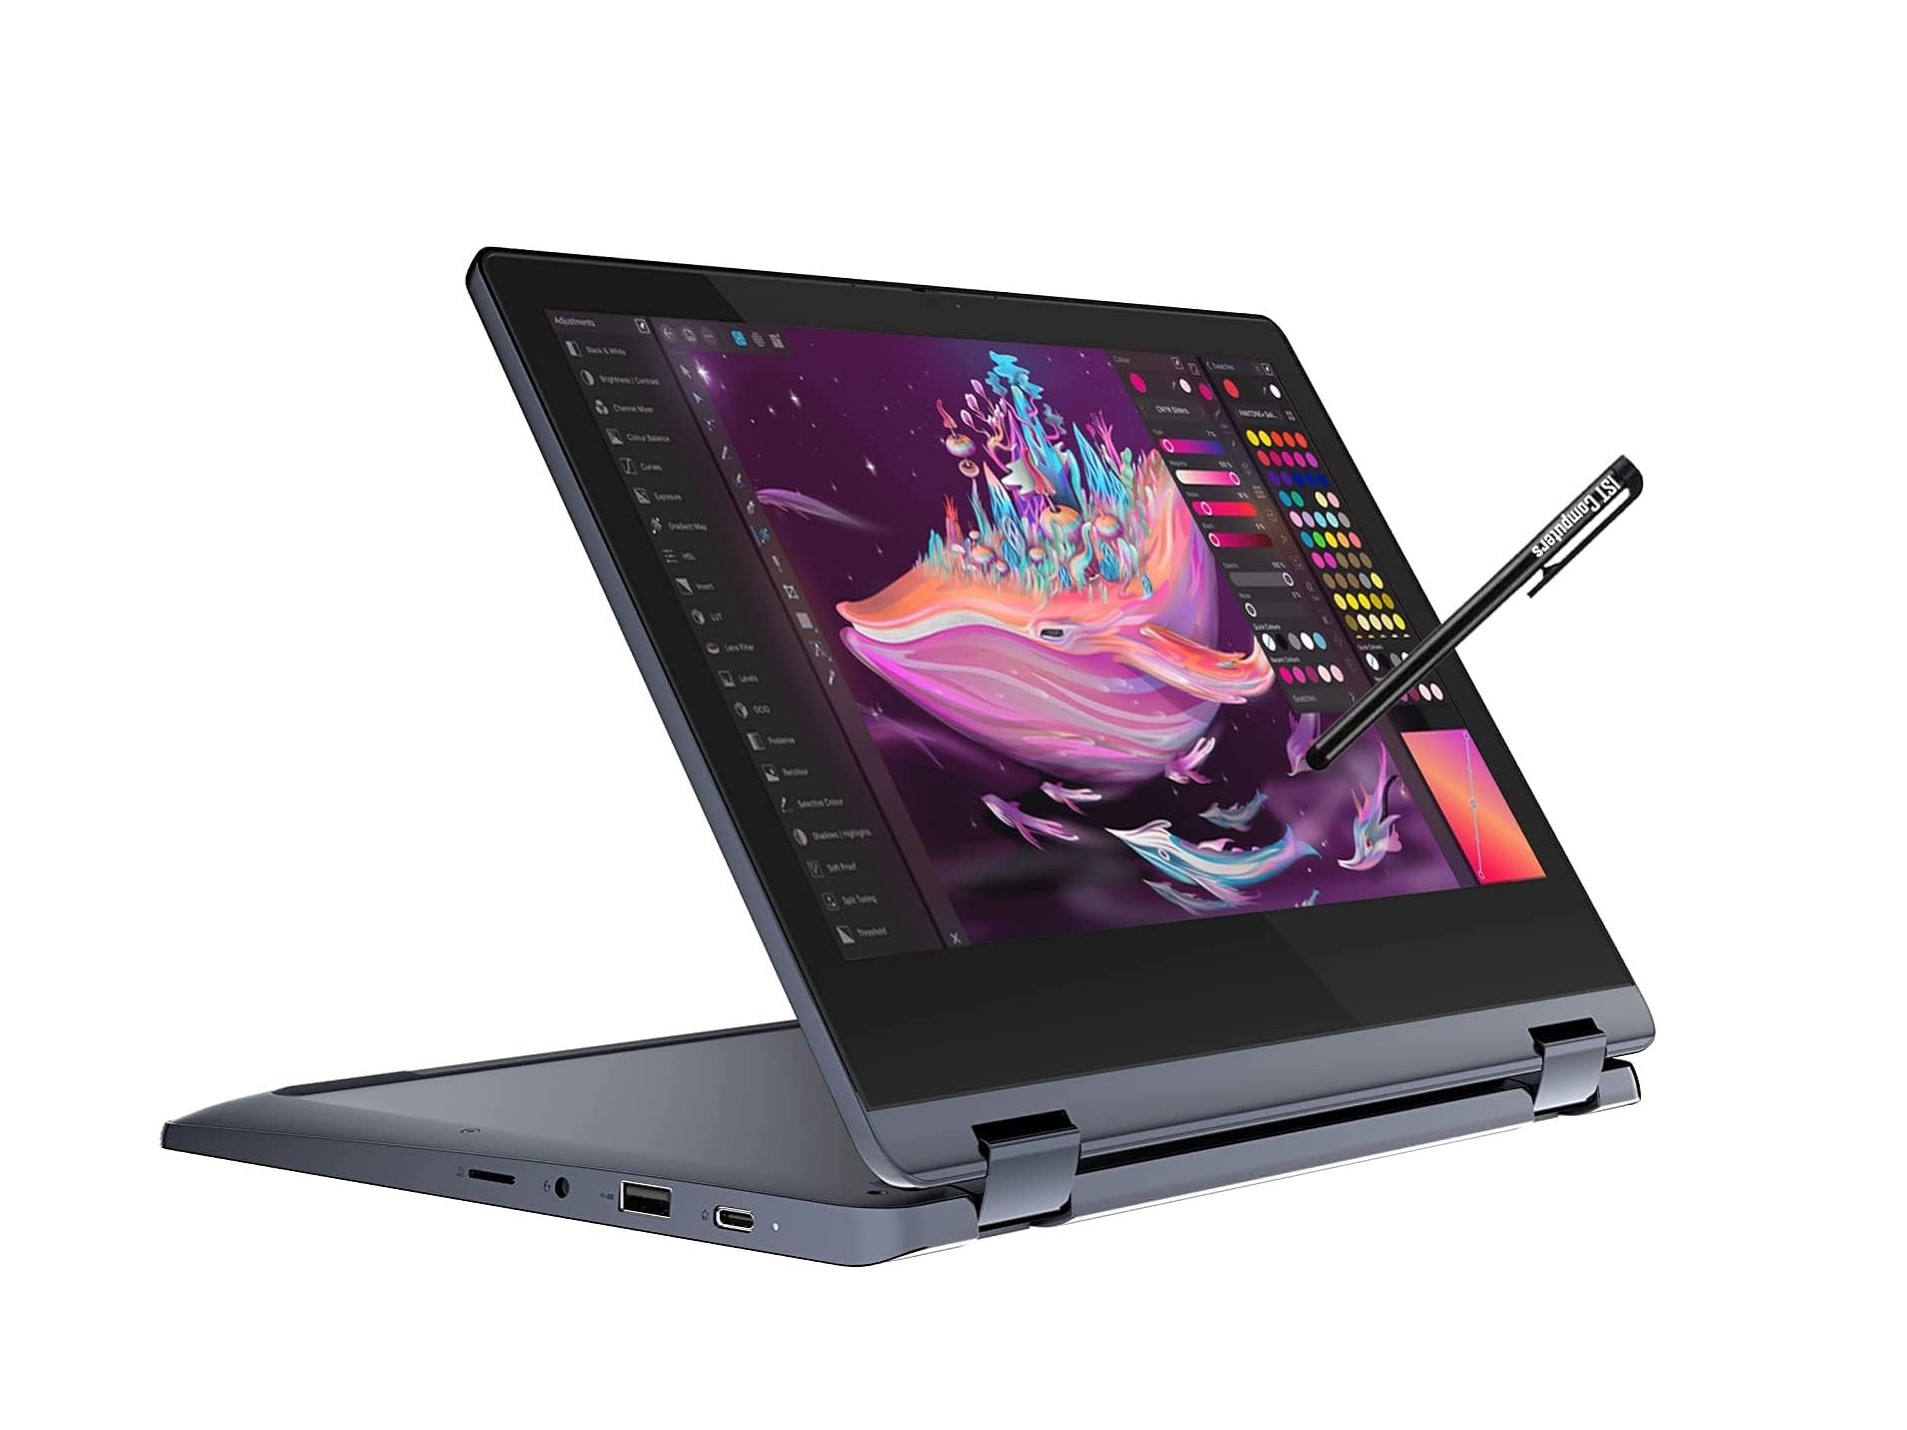 Lenovo IdeaPad Flex 3 Chromebook ۱۱ اینچی در حالت تبدیل با قلم.